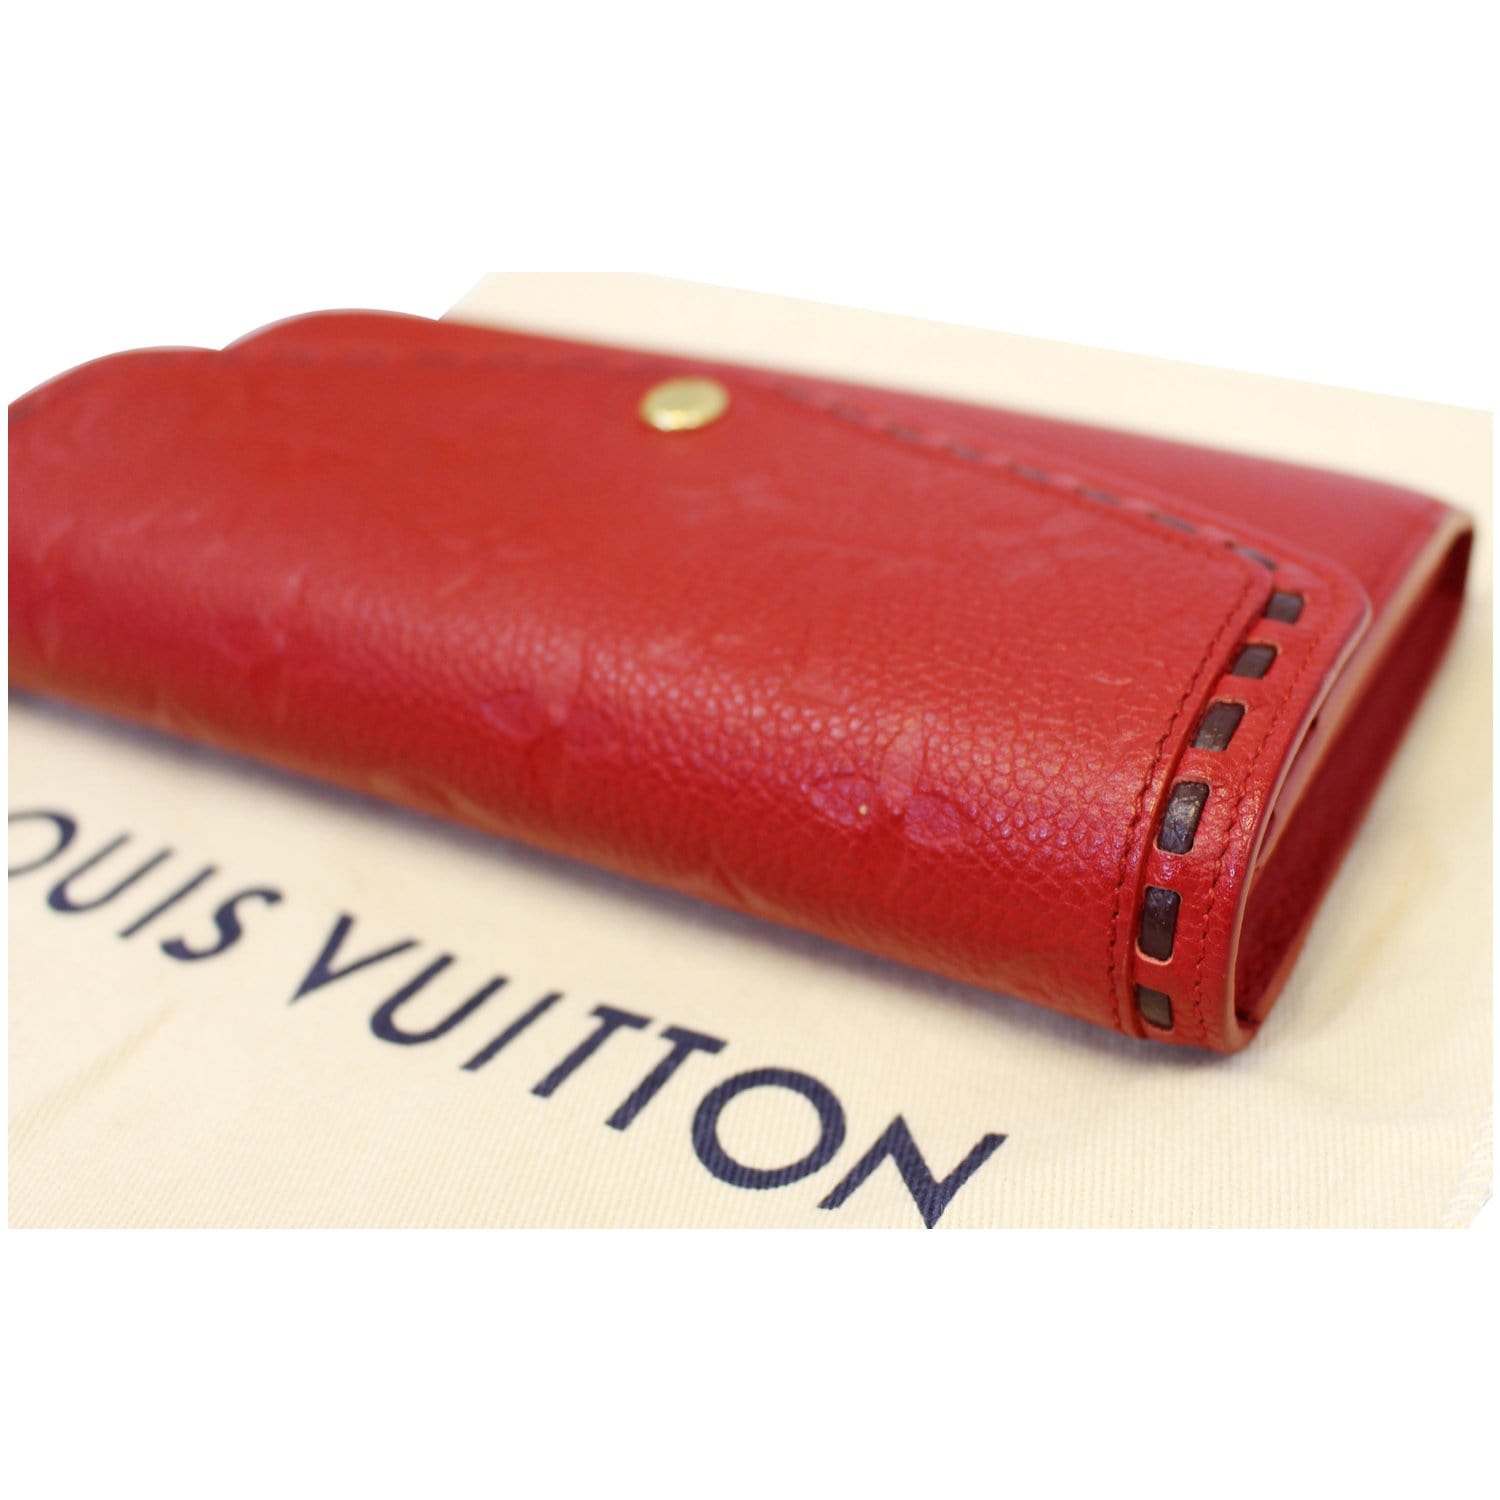 Louis Vuitton Pochette Métis in Scarlet Monogram Empreinte - SOLD